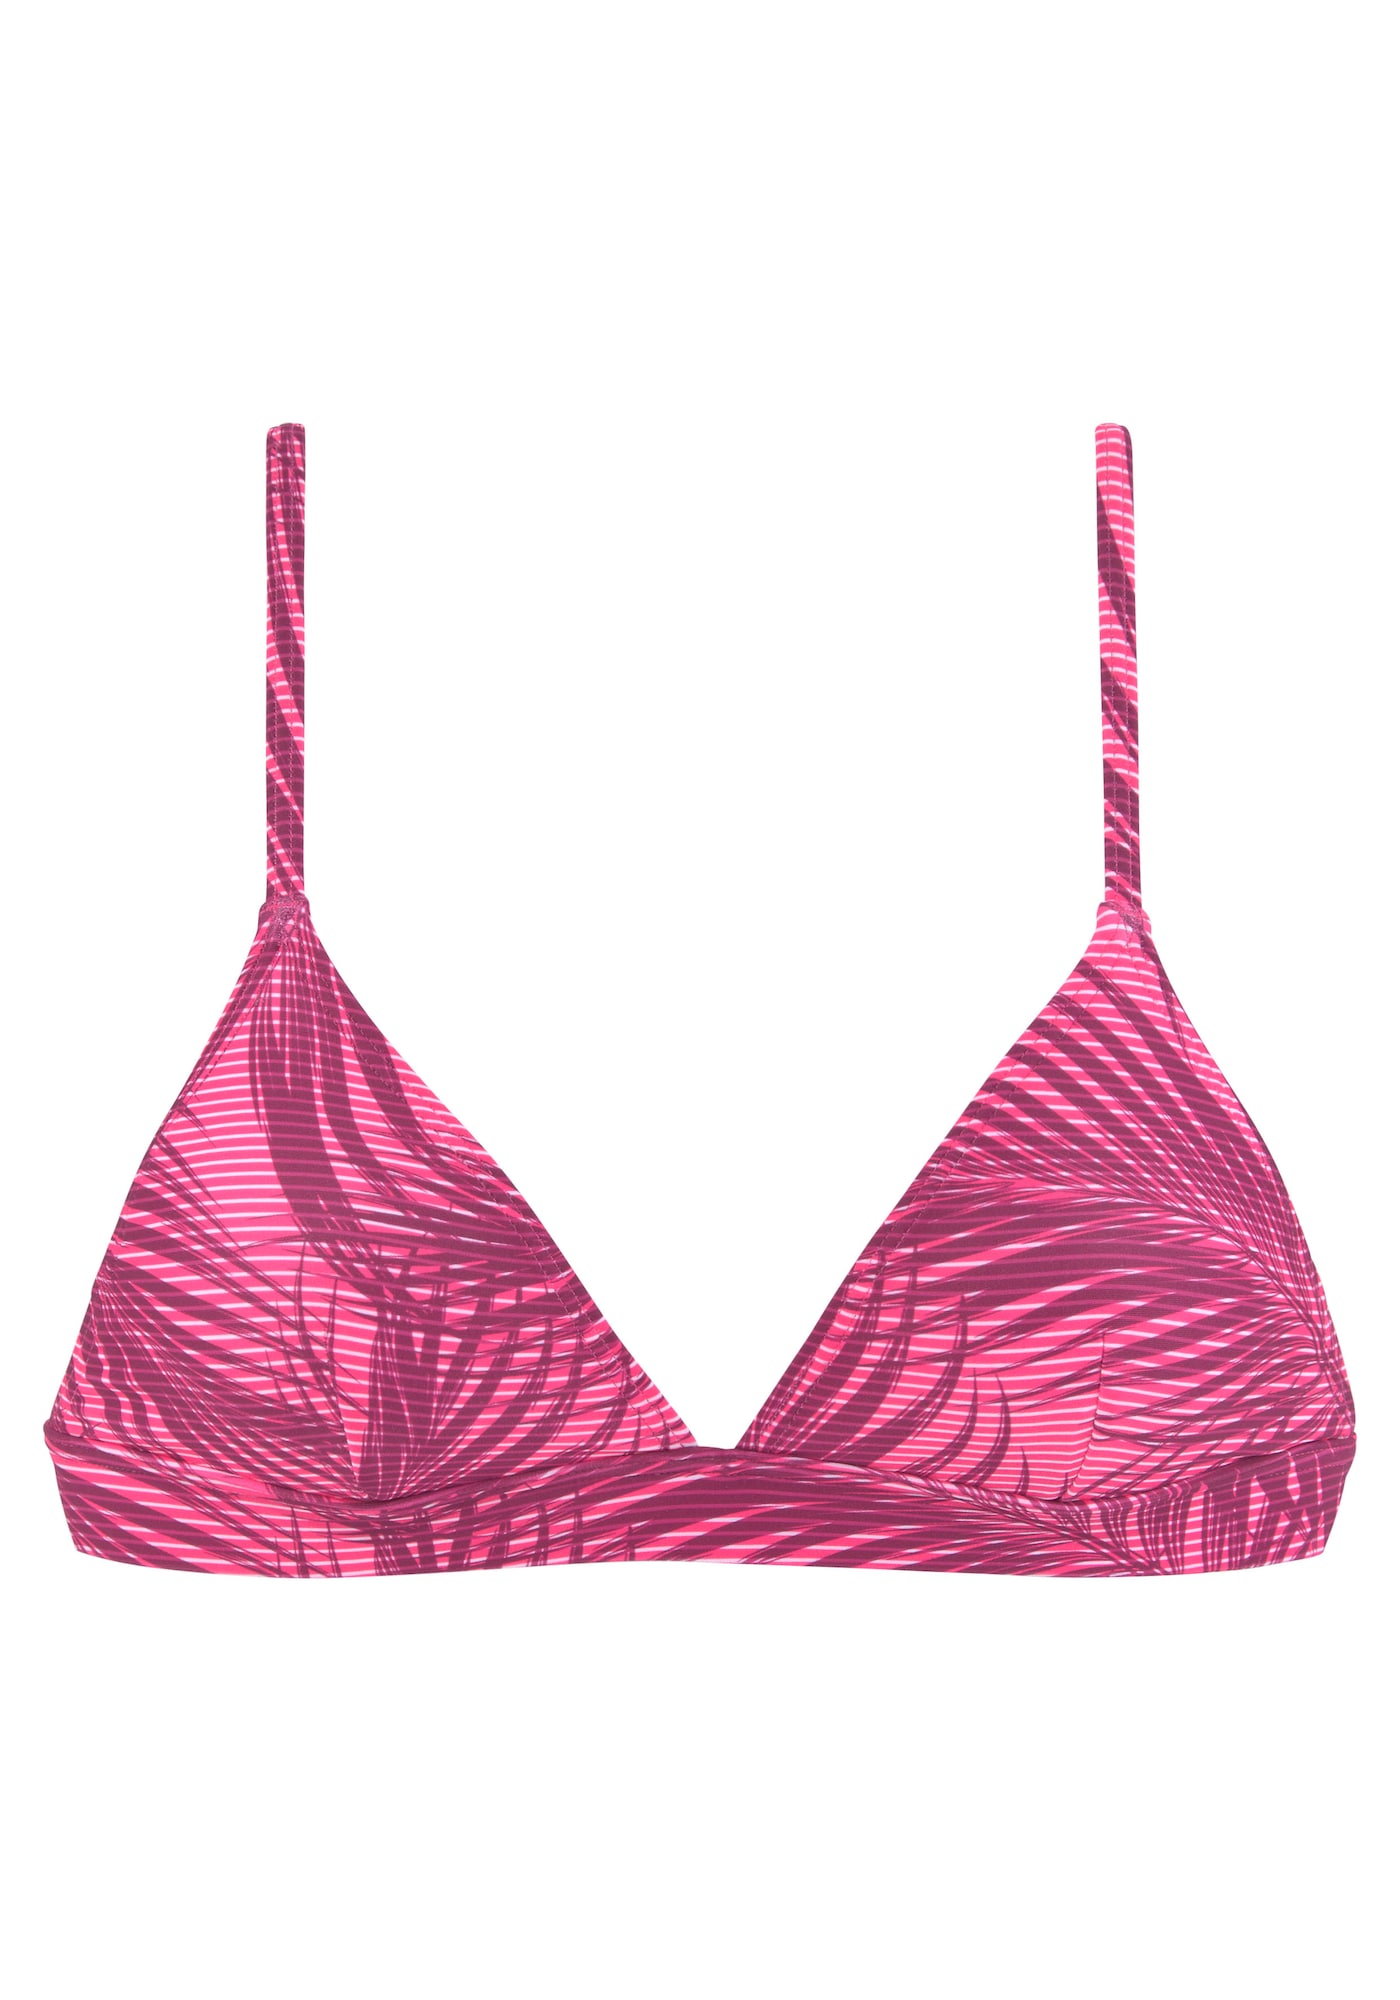 LASCANA ACTIVE Bikinio viršutinė dalis vyšninė spalva / rožinė / balta